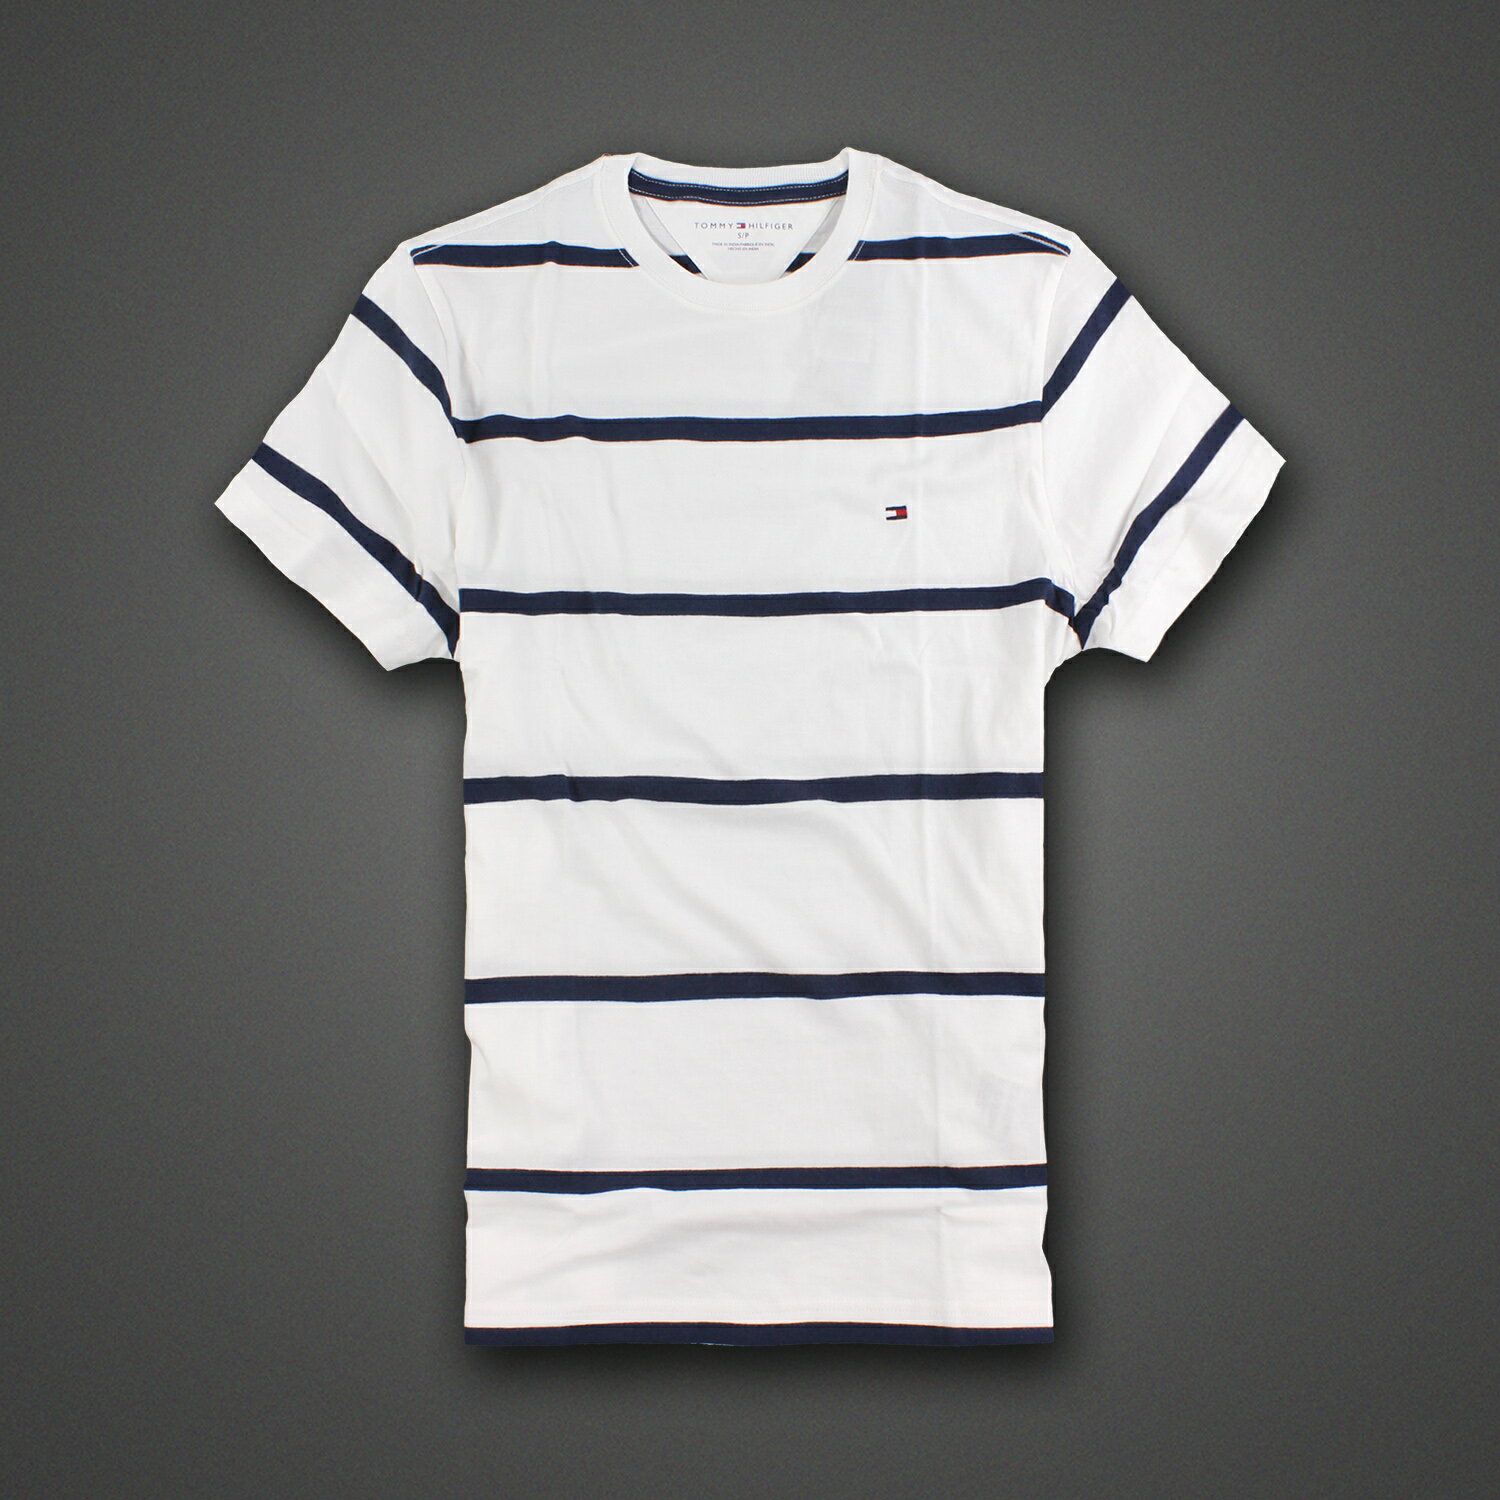 美國百分百【Tommy Hilfiger】T恤 TH 男 圓領 T-shirt 短袖 條紋 白 深藍 S號 E675